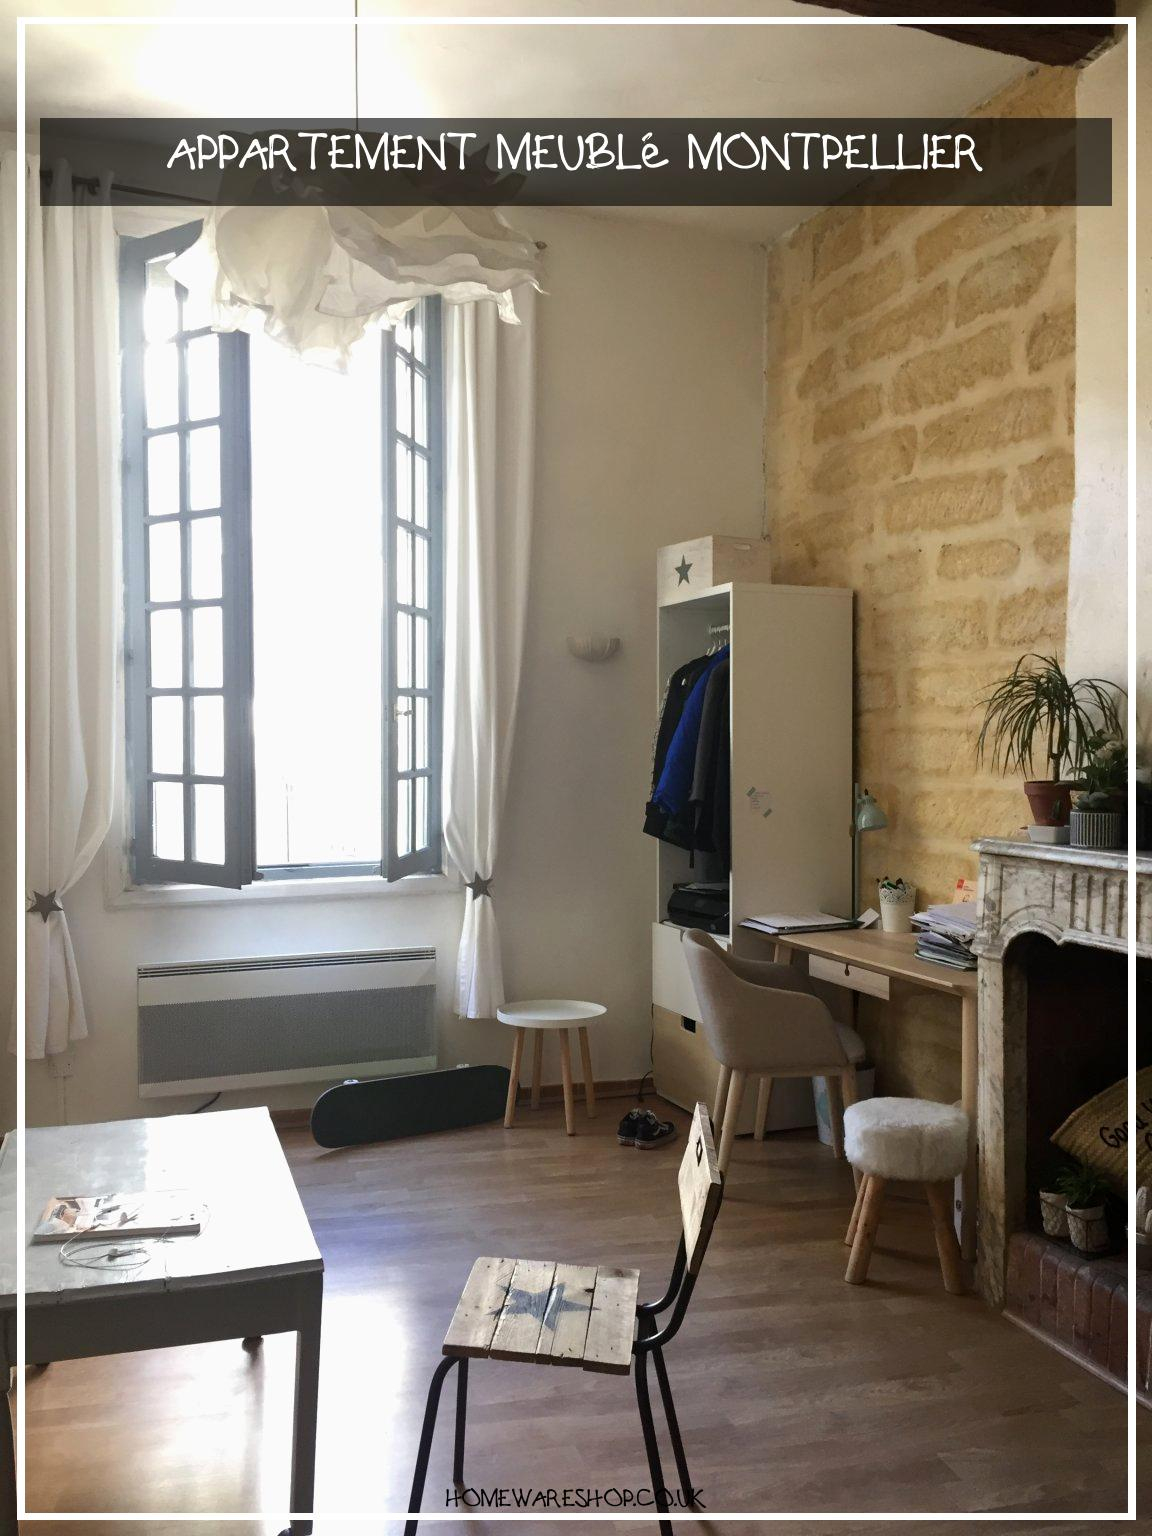 Impressionnant Appartement Meublé Montpellier – Homewareshop avec Appartement Meublé Montpellier